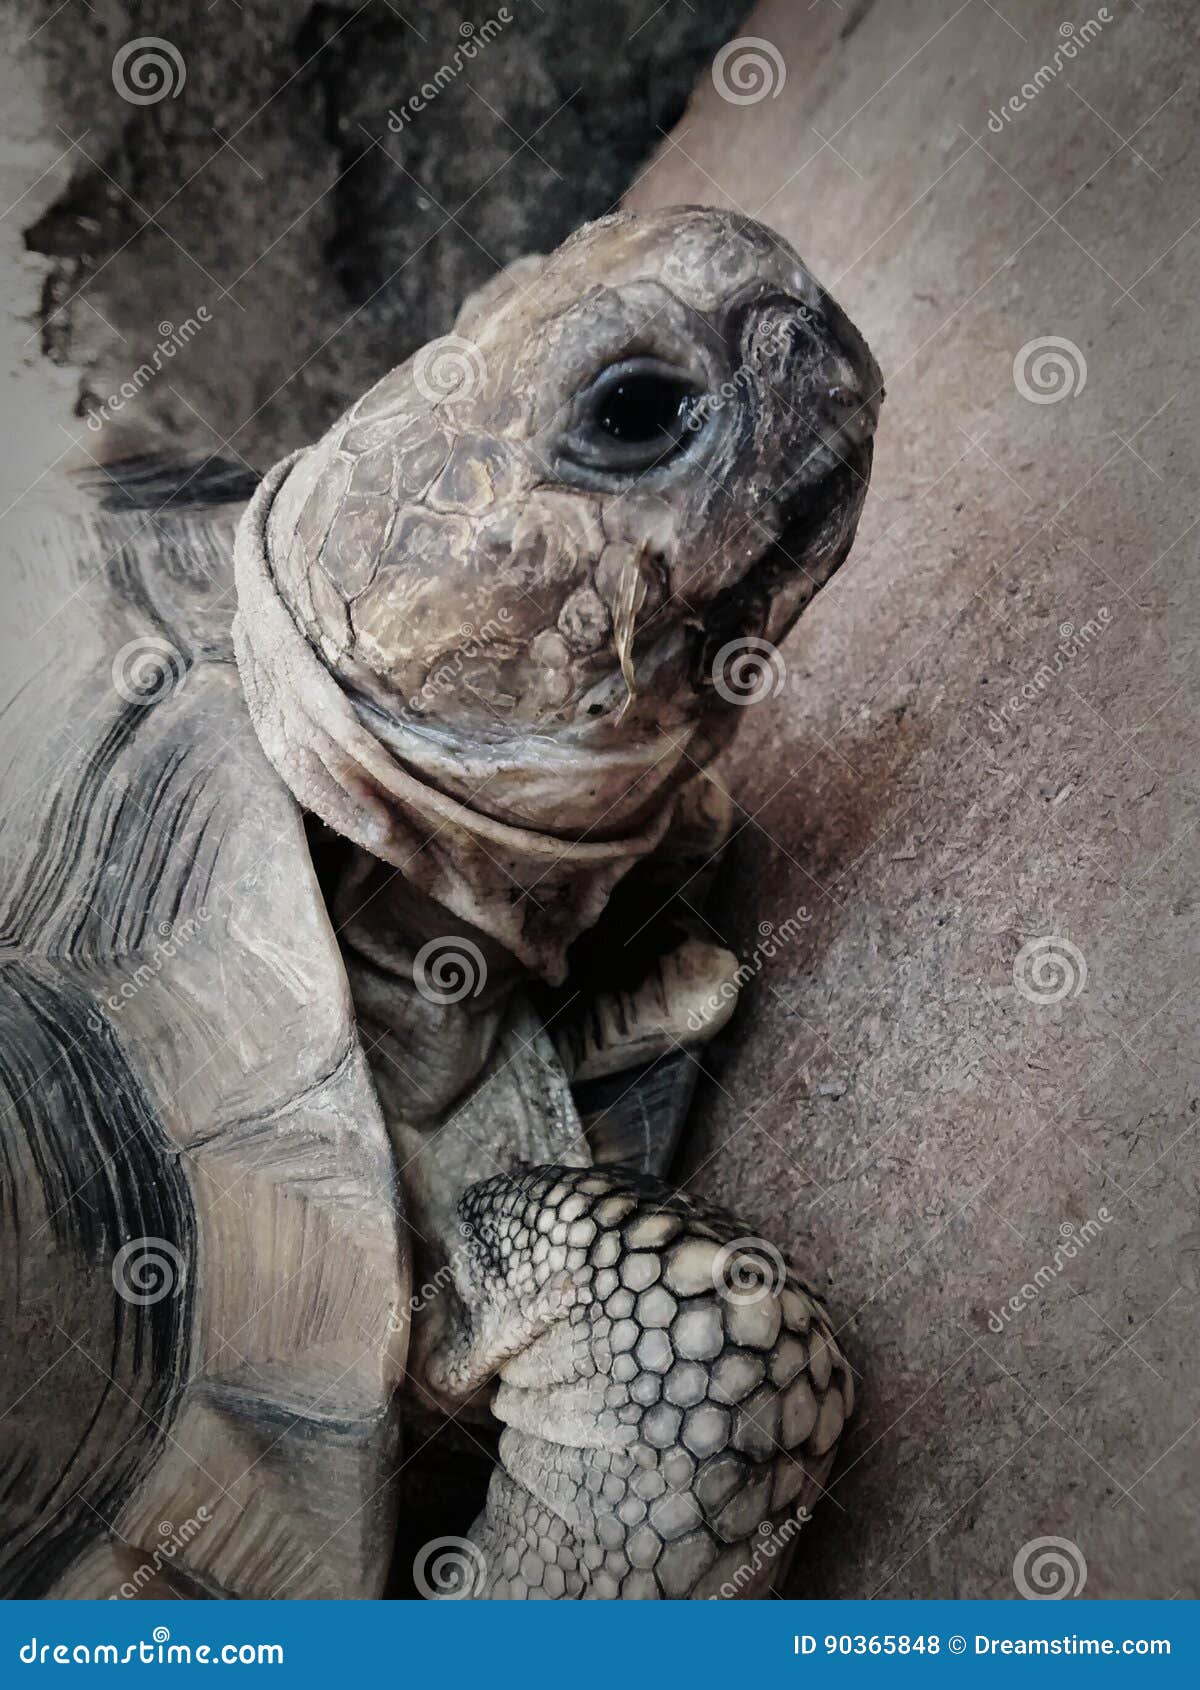 primer plano muy detallado de una hermosa tortuga